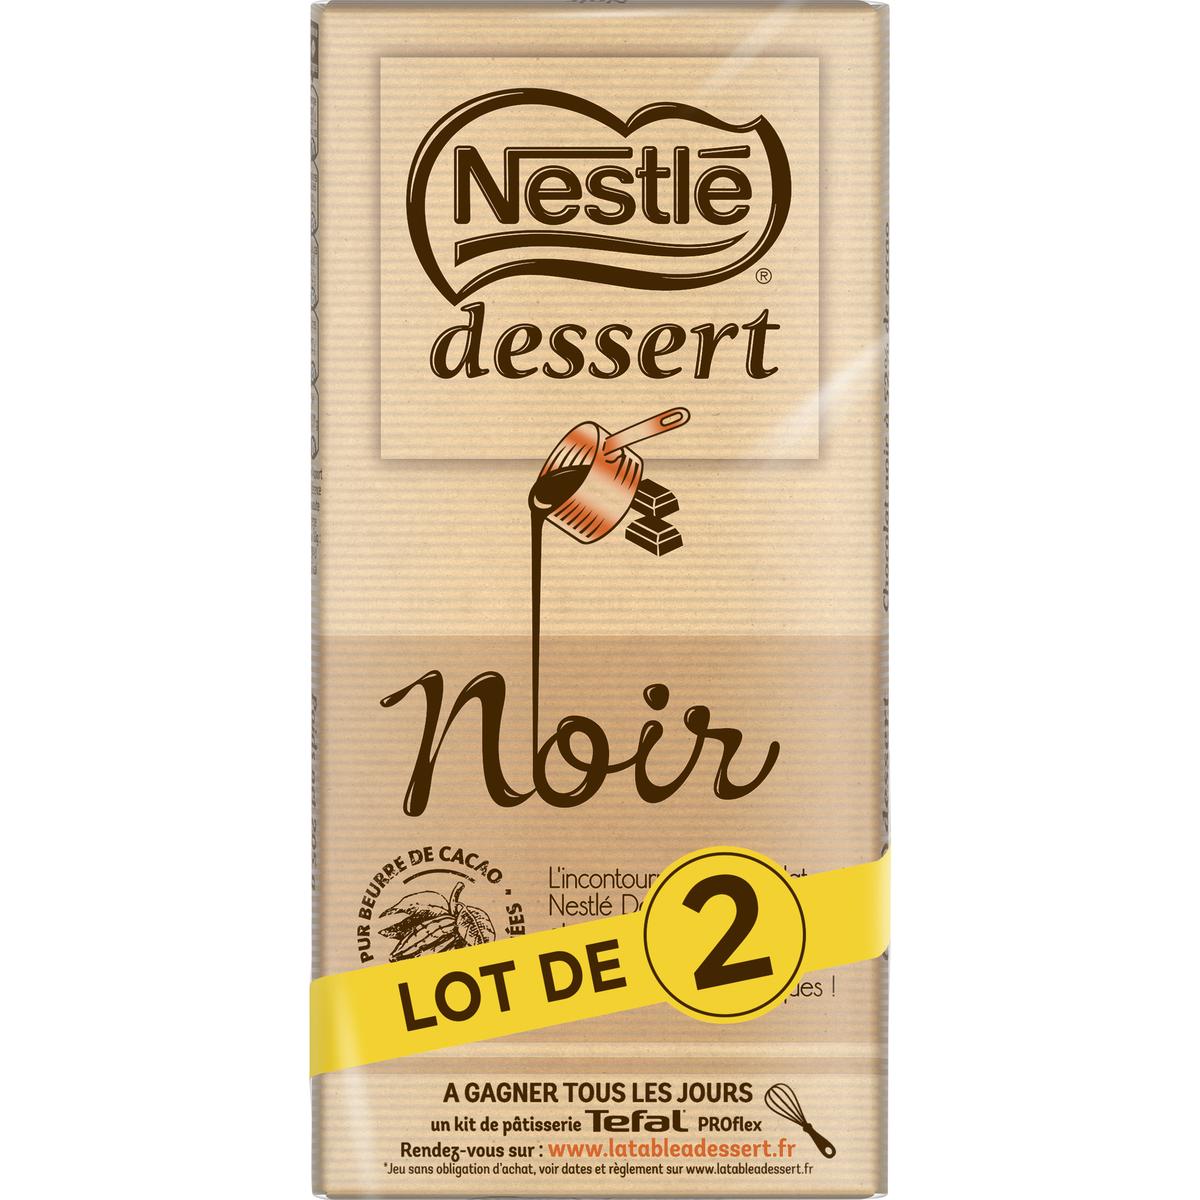 Nestlé Dessert - Chocolat Noir Pâtissier - Tablette de 205g